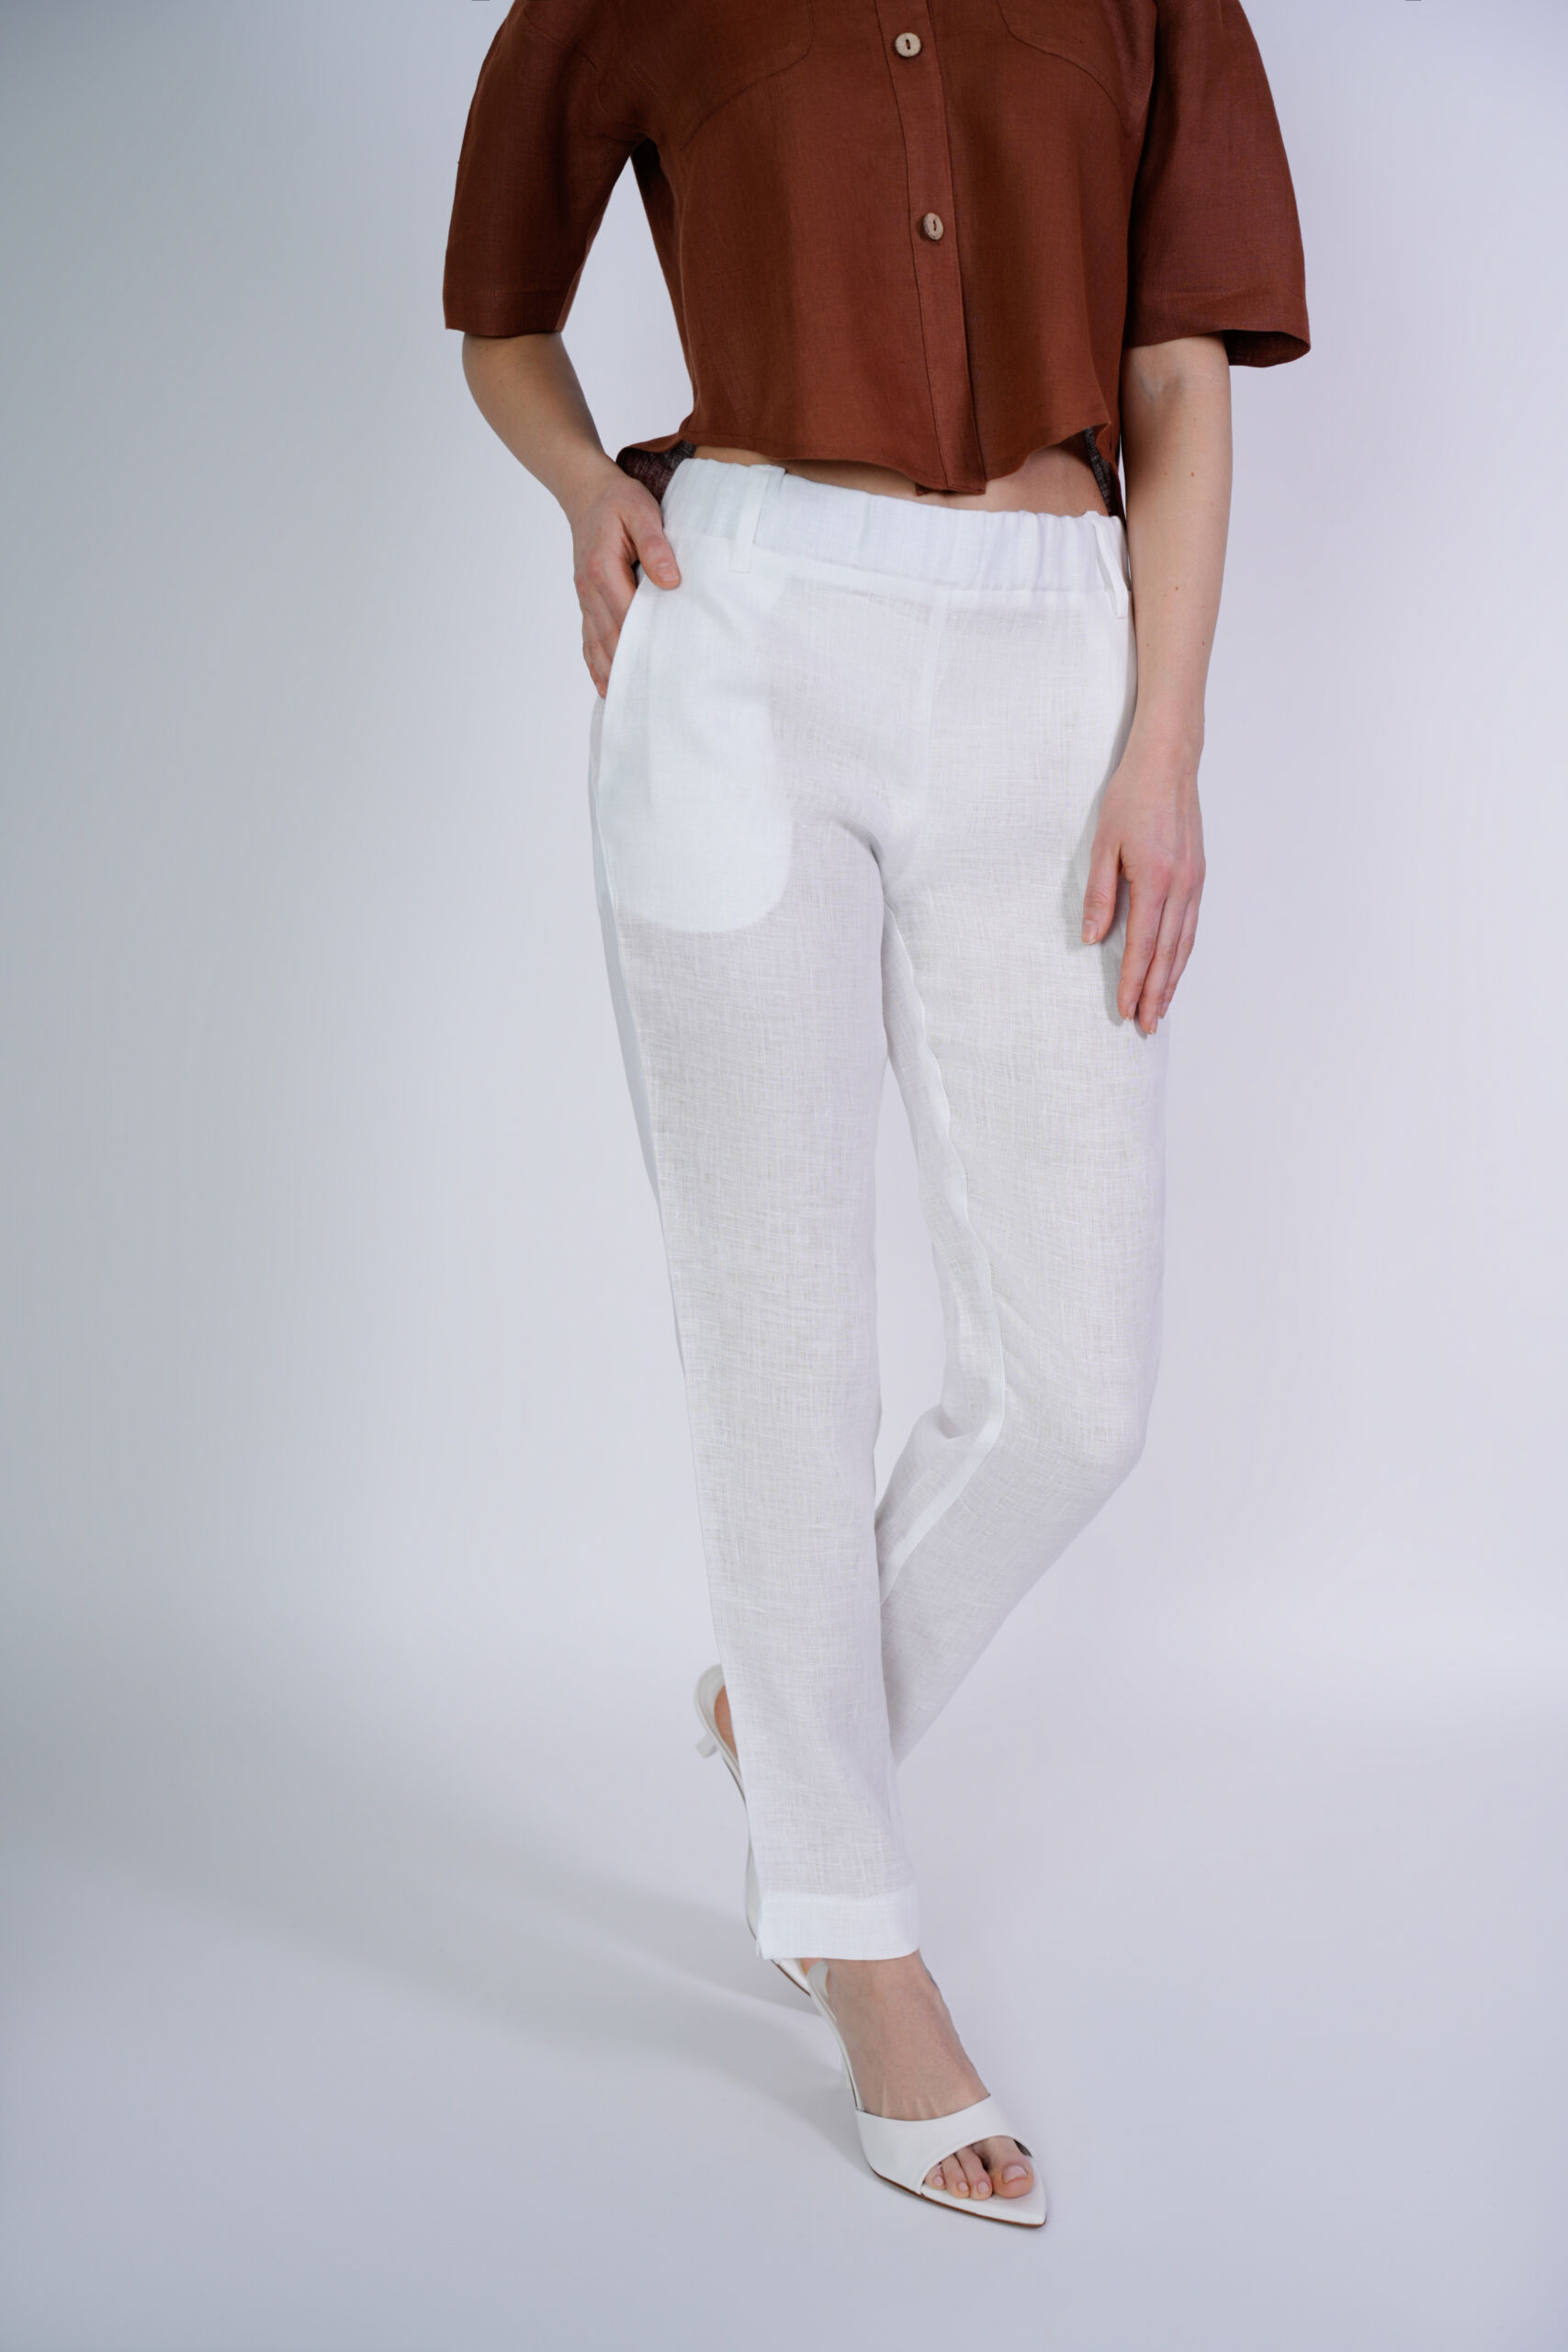 Rosa Bianco 3 scaled 1stAmerican pantalone da donna con passanti e tasche - pantalone con elastico in vita puro lino 100% Made in Italy